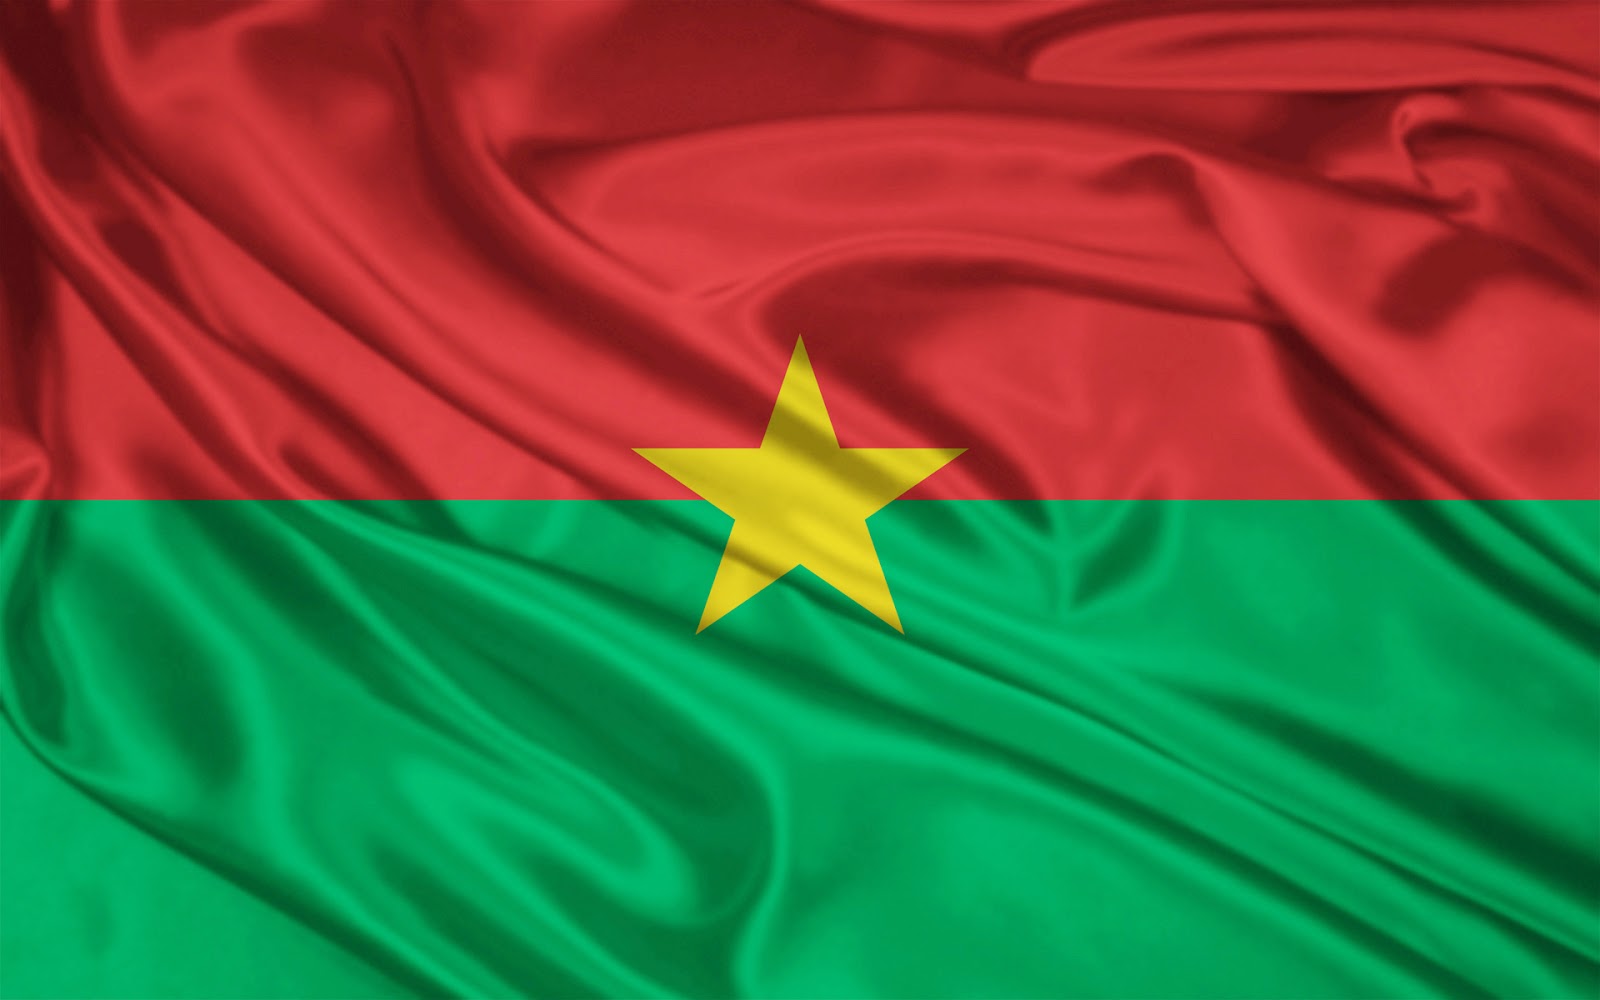 UPF in Burkina Faso